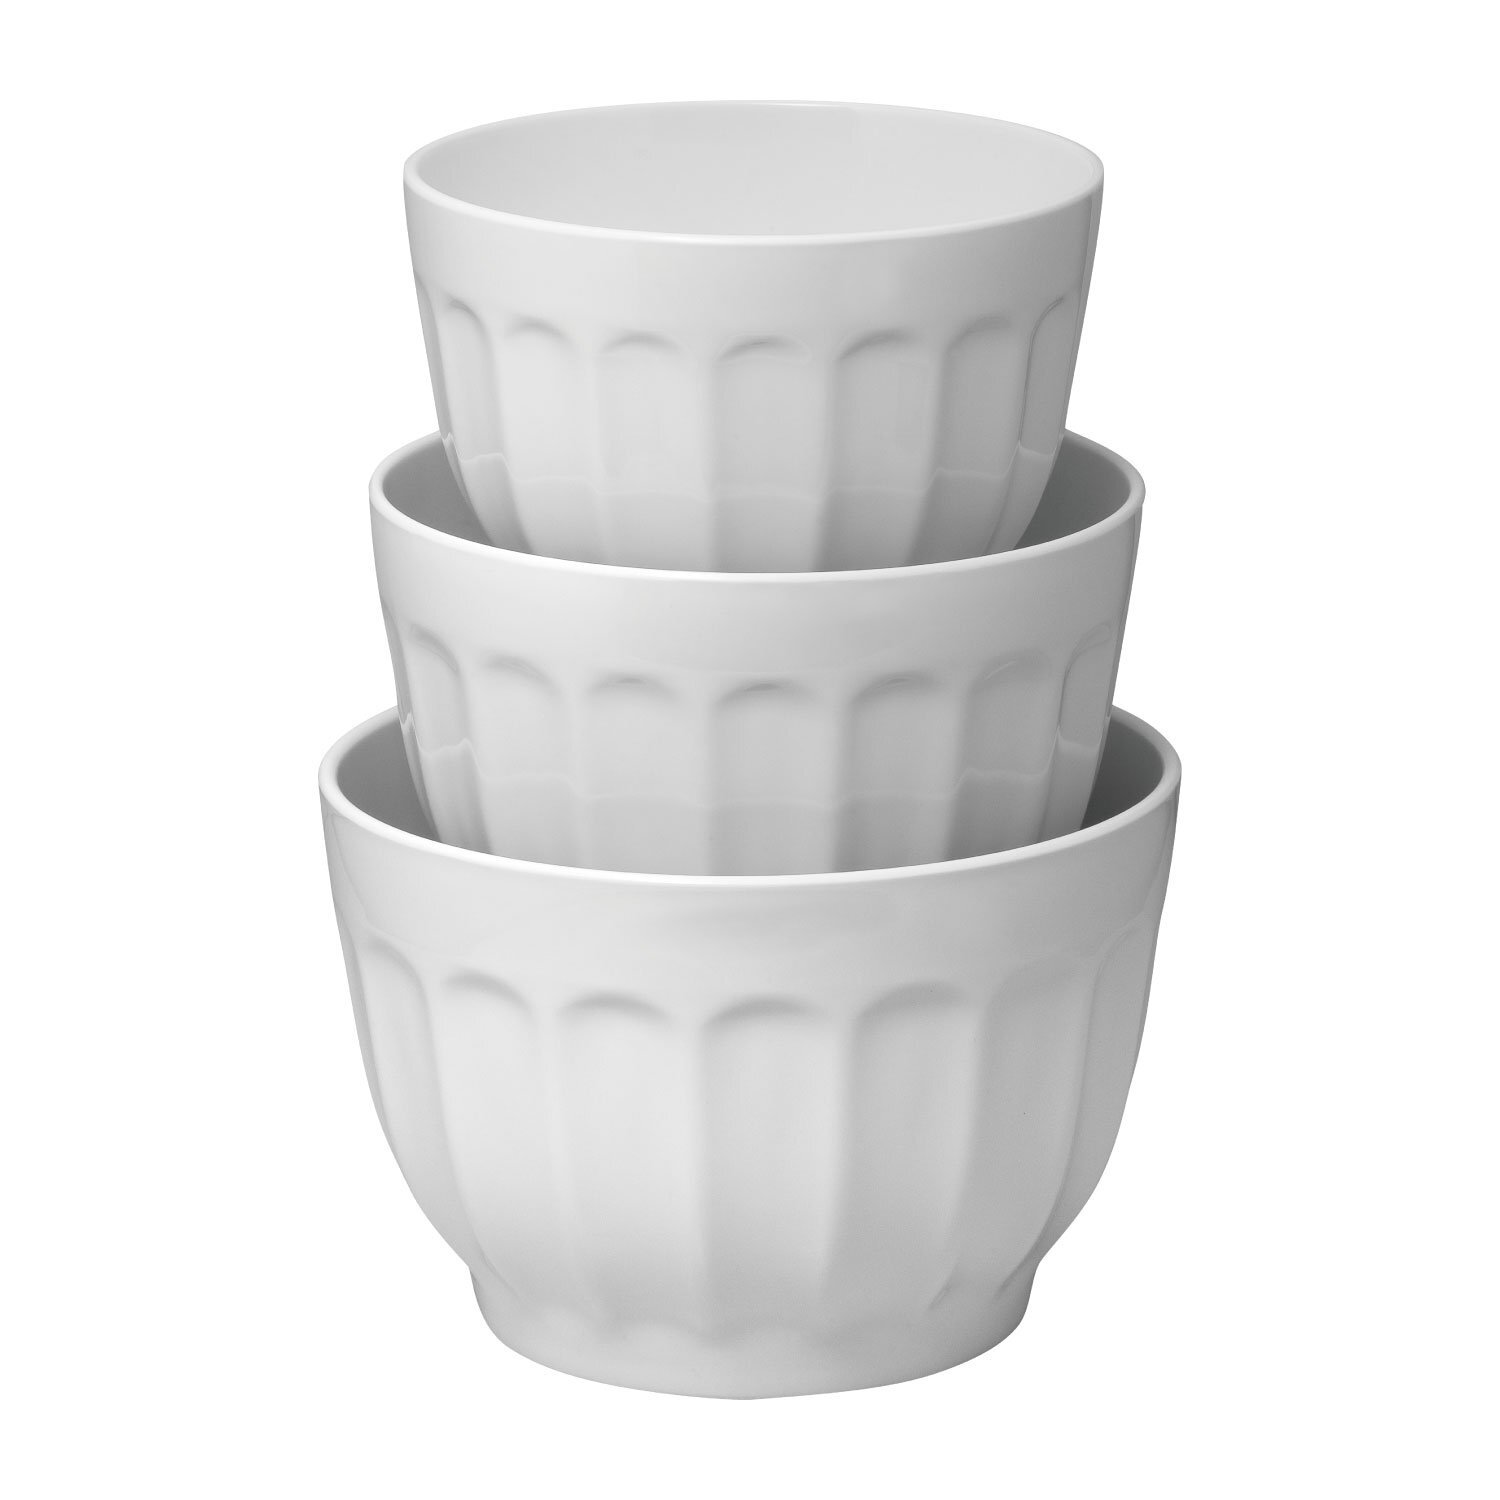 Kohler Porcelain Prep Bowl Set